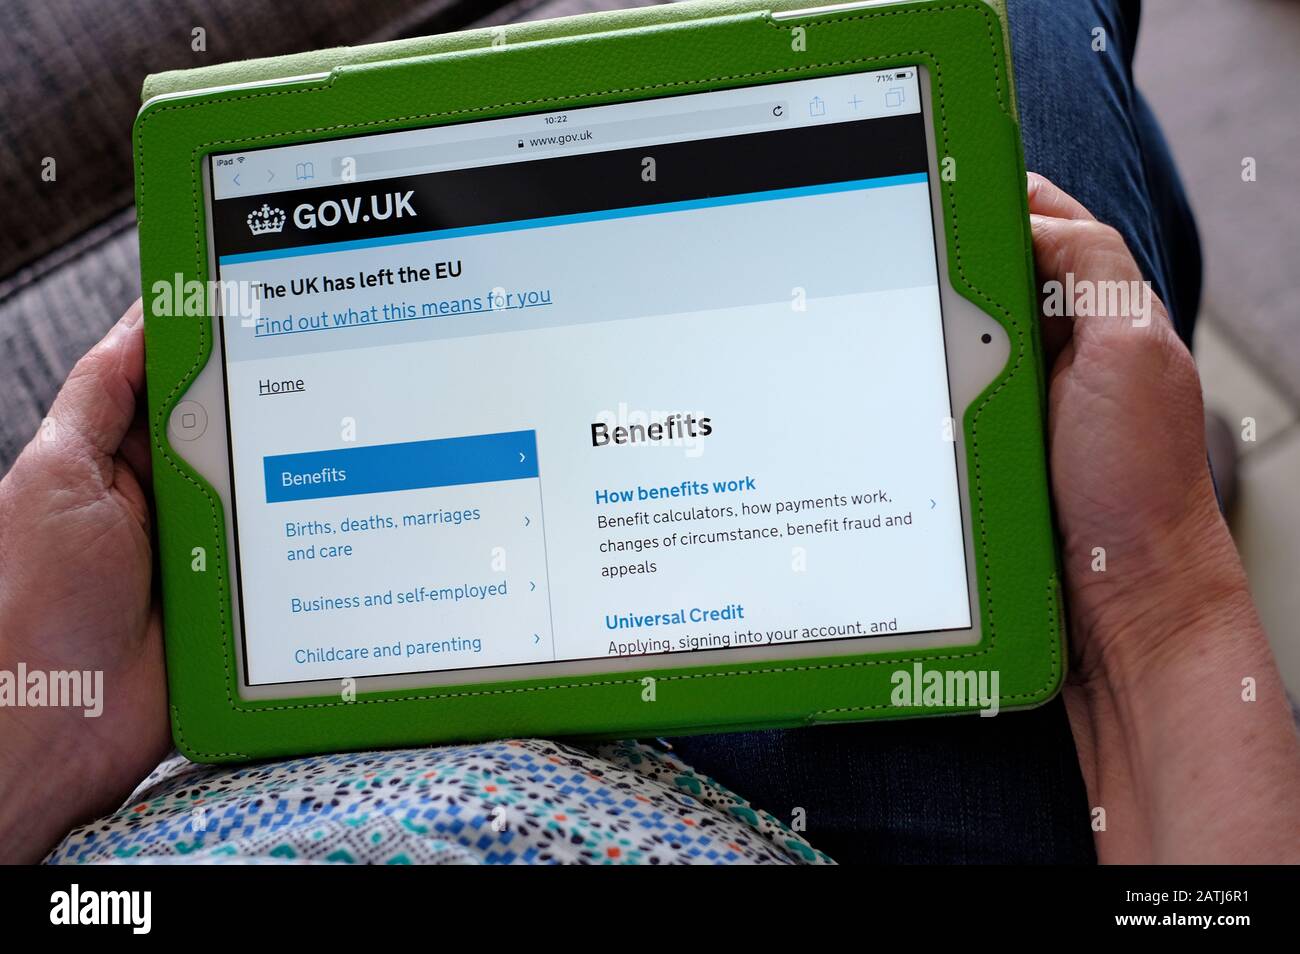 personne tenant l'ordinateur de tablette ipad montrant la page d'accueil des avantages gov.uk Banque D'Images